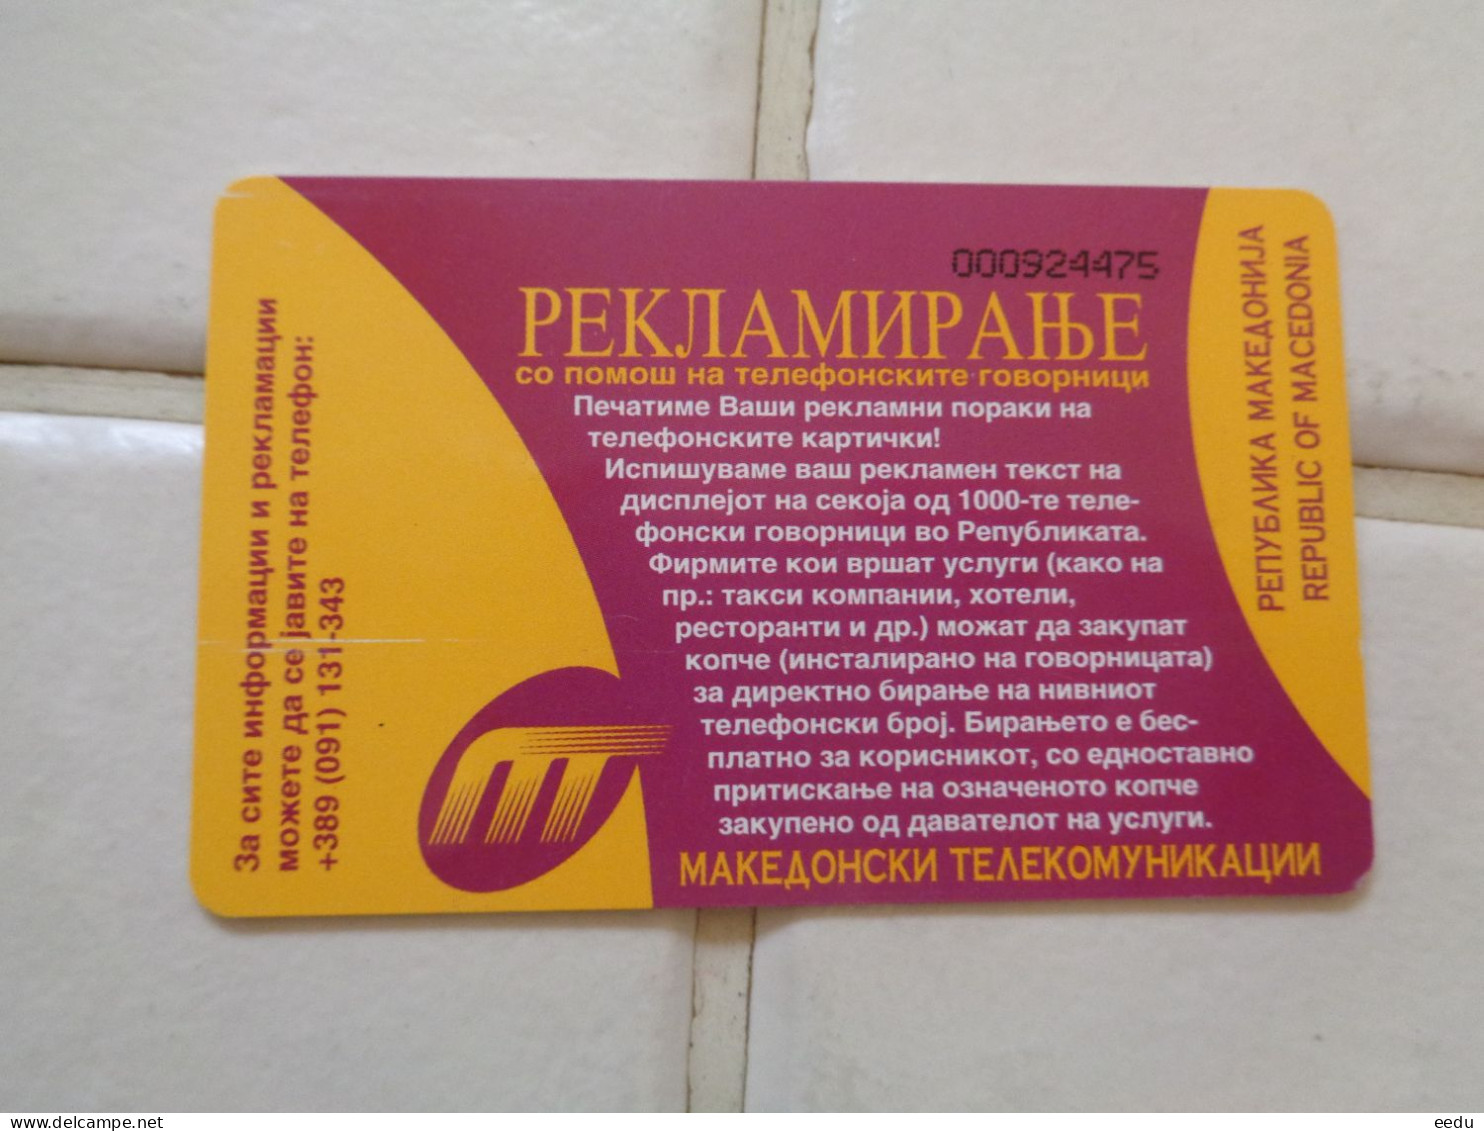 Macedonia Phonecard - Macedonia Del Nord